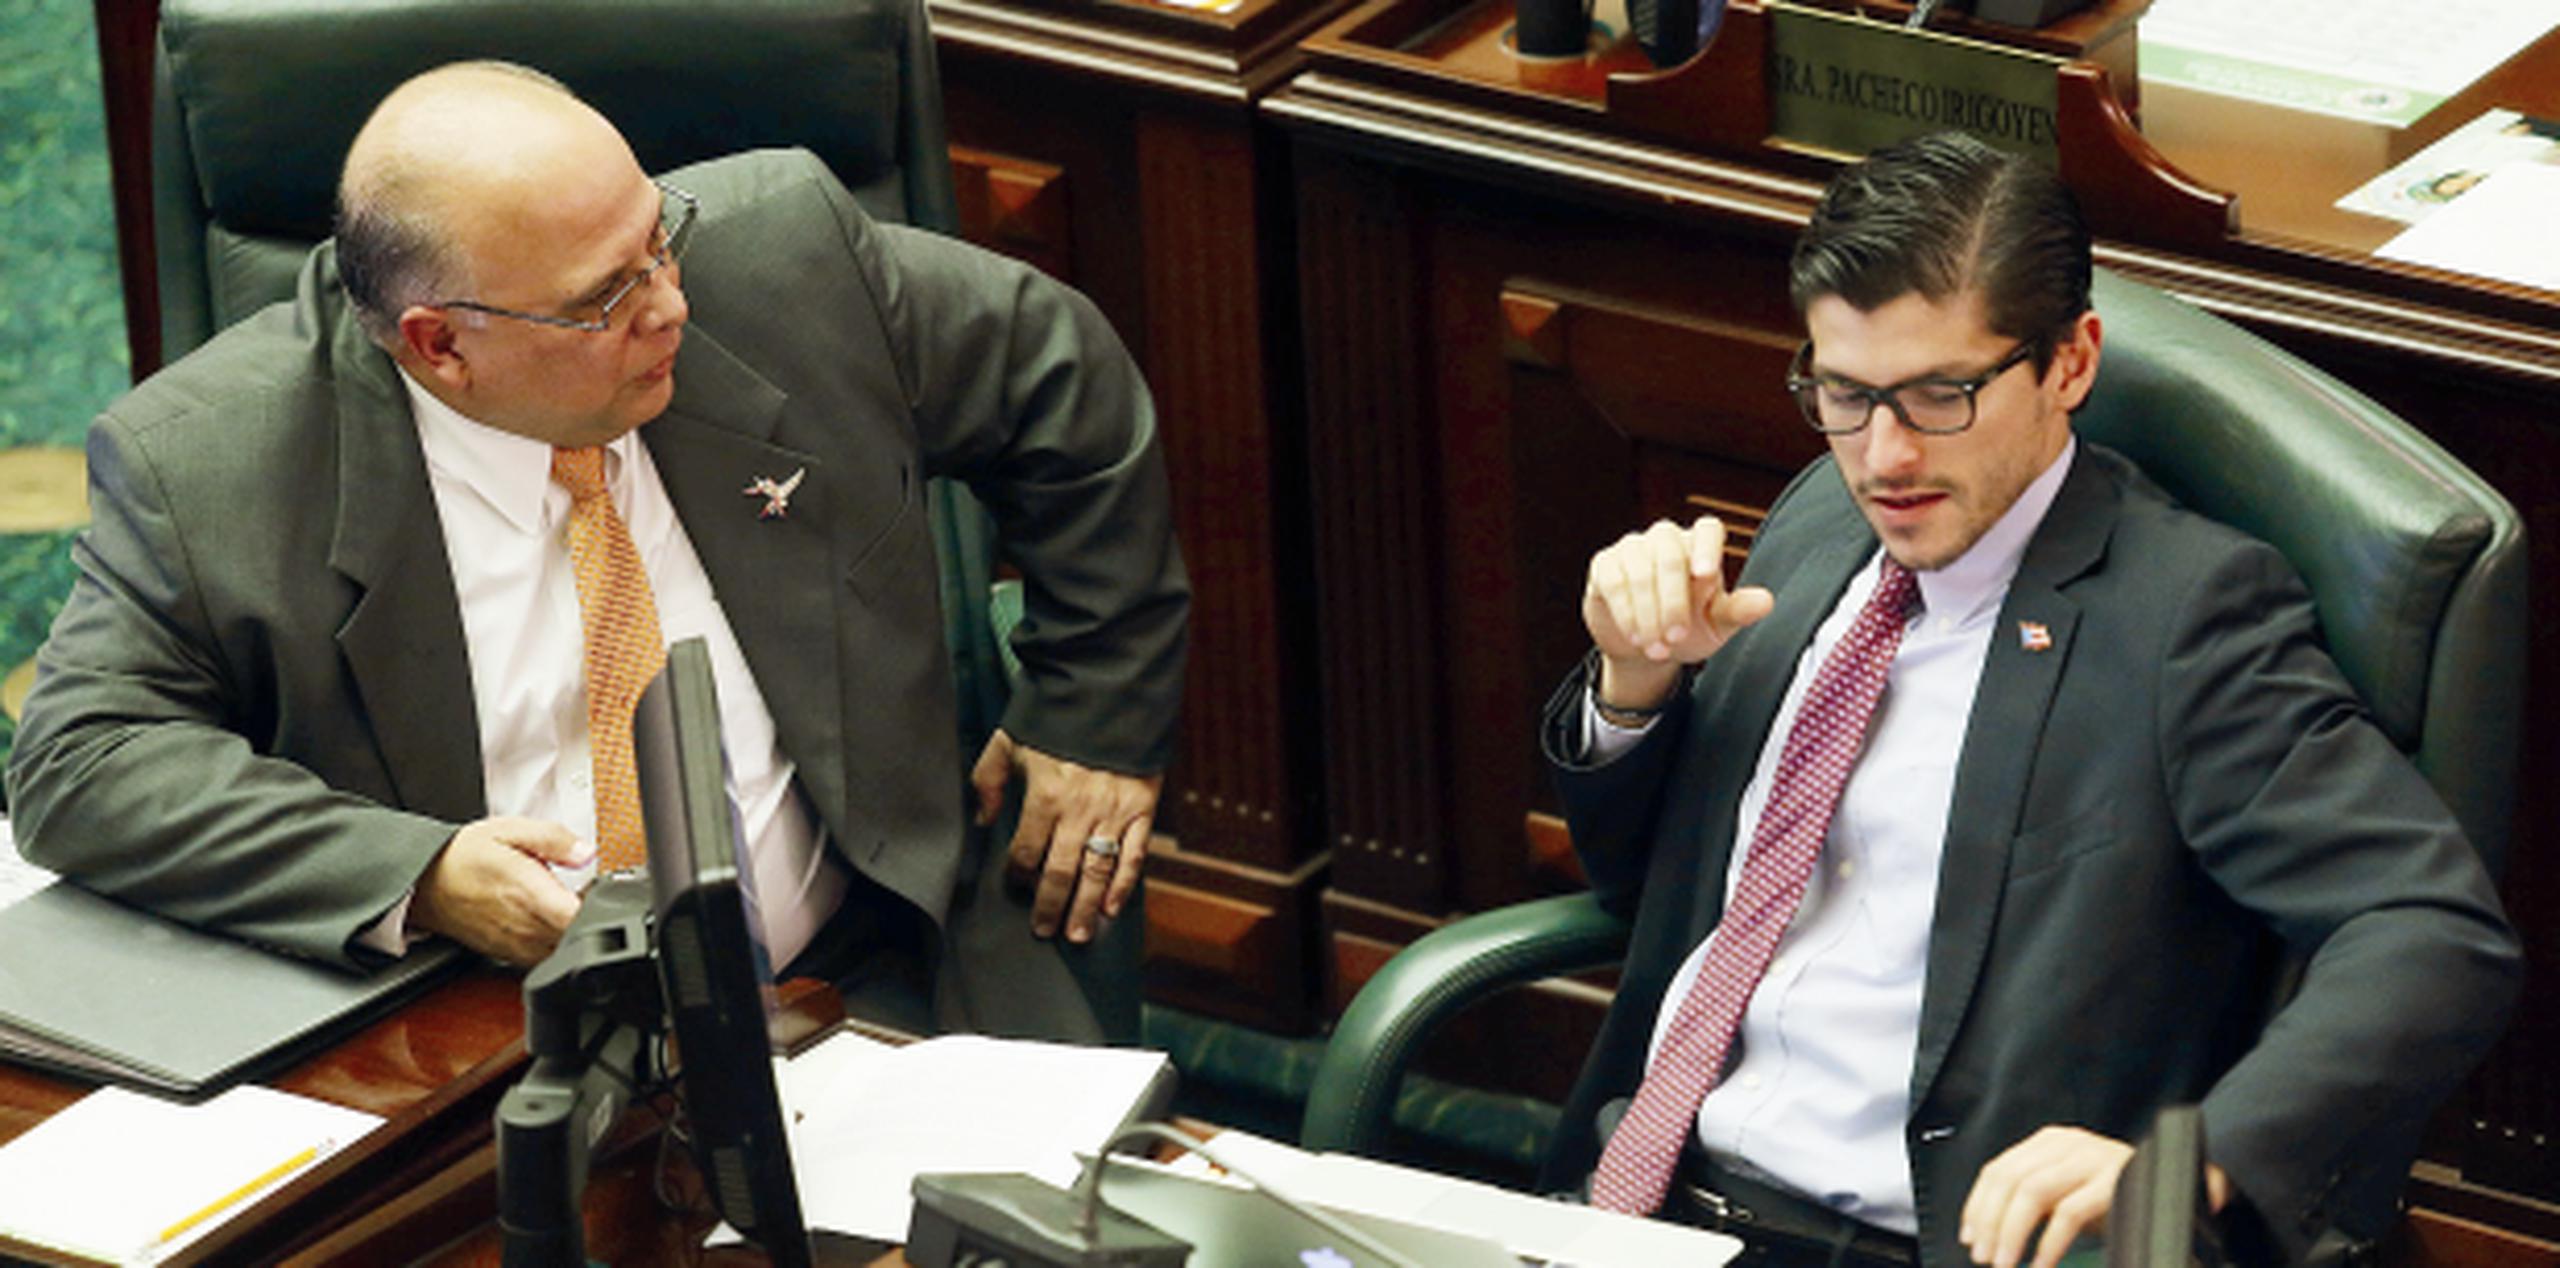 El representante Luis Raúl Torres conversa con el legislador Manuel Natal durante una sesión de la Cámara de Representantes. (Archivo)